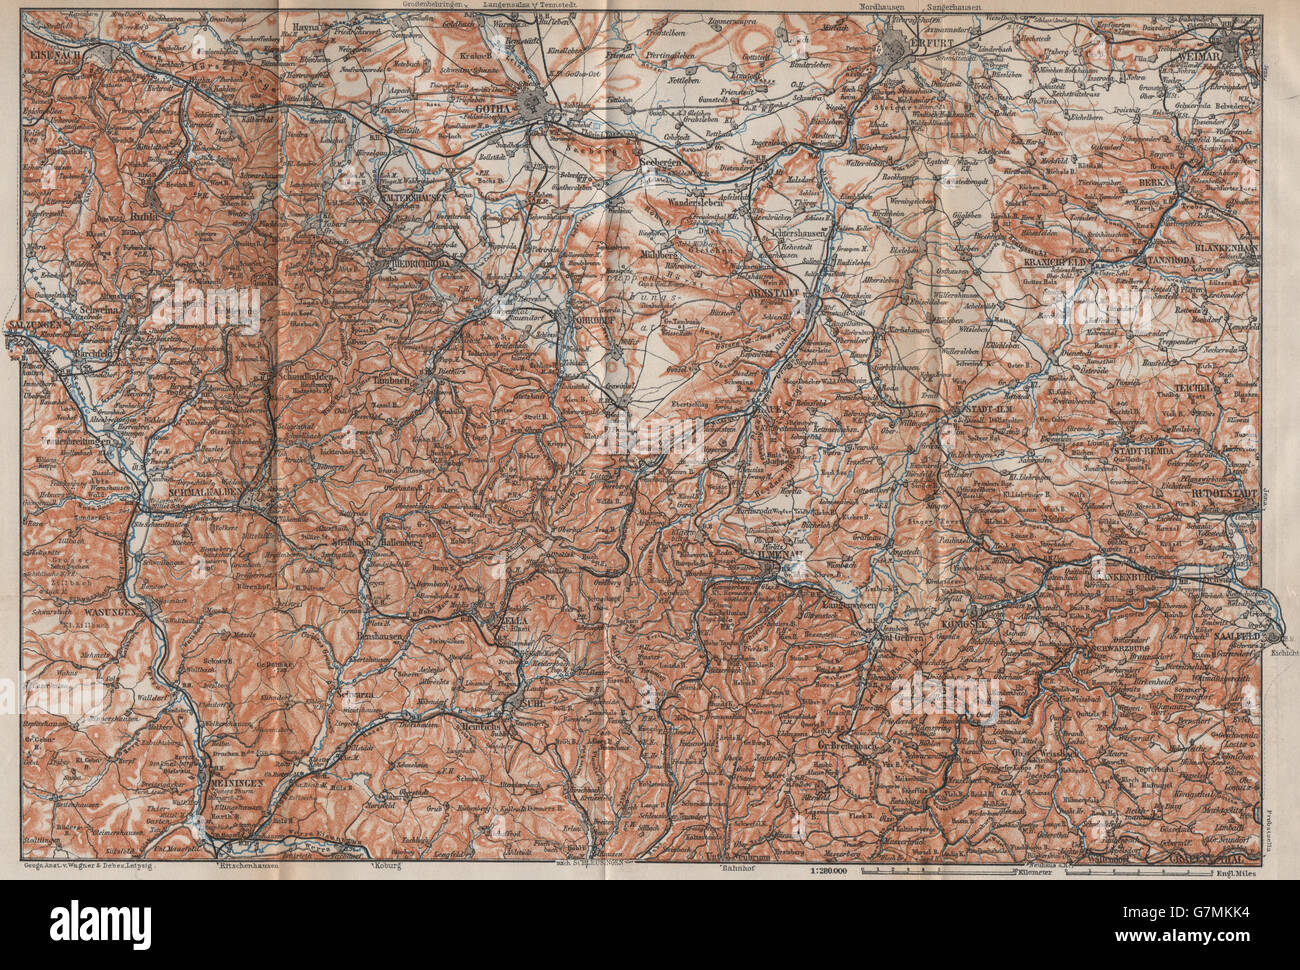 THÜRINGER Wald. Bosque de Turingia. Gotha Eisenach Erfurt Weimar karte, 1913 mapa Foto de stock